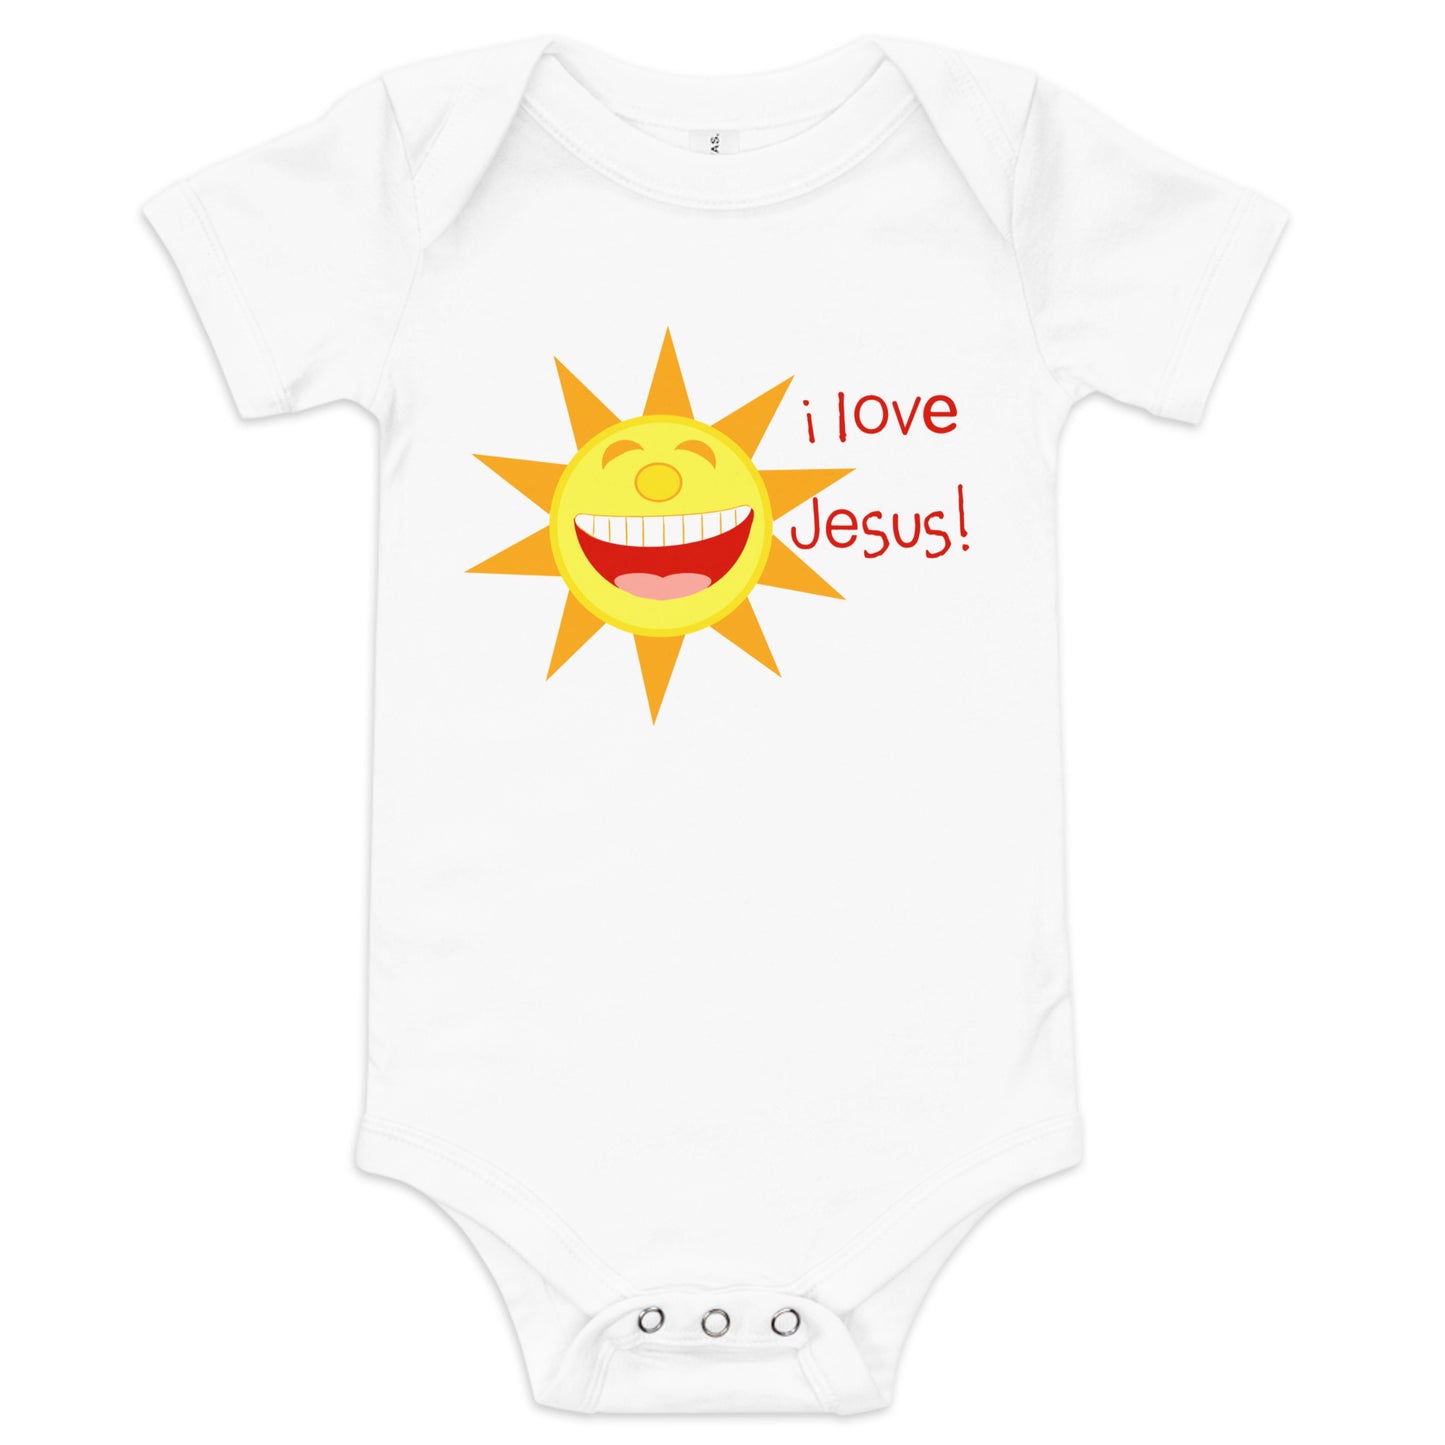 I Love Jesus (Sun) Infant Bodysuit